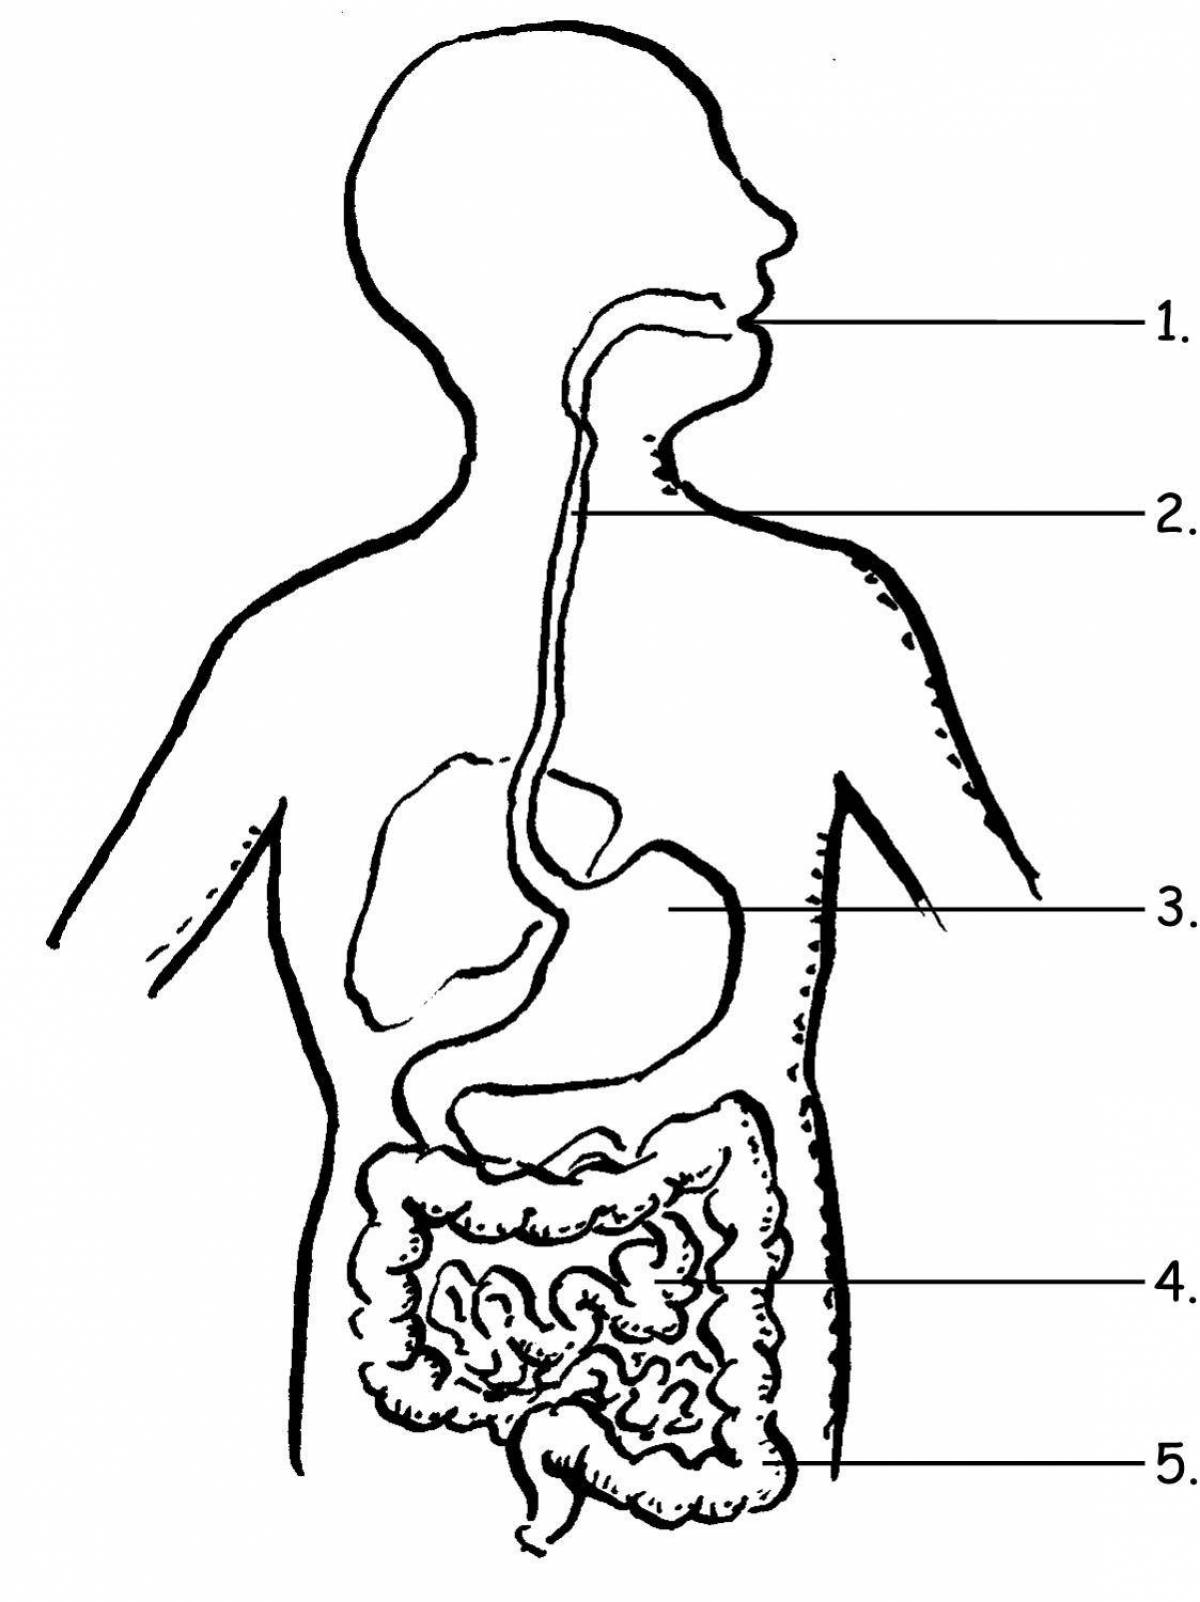 Human structure internal organs #2